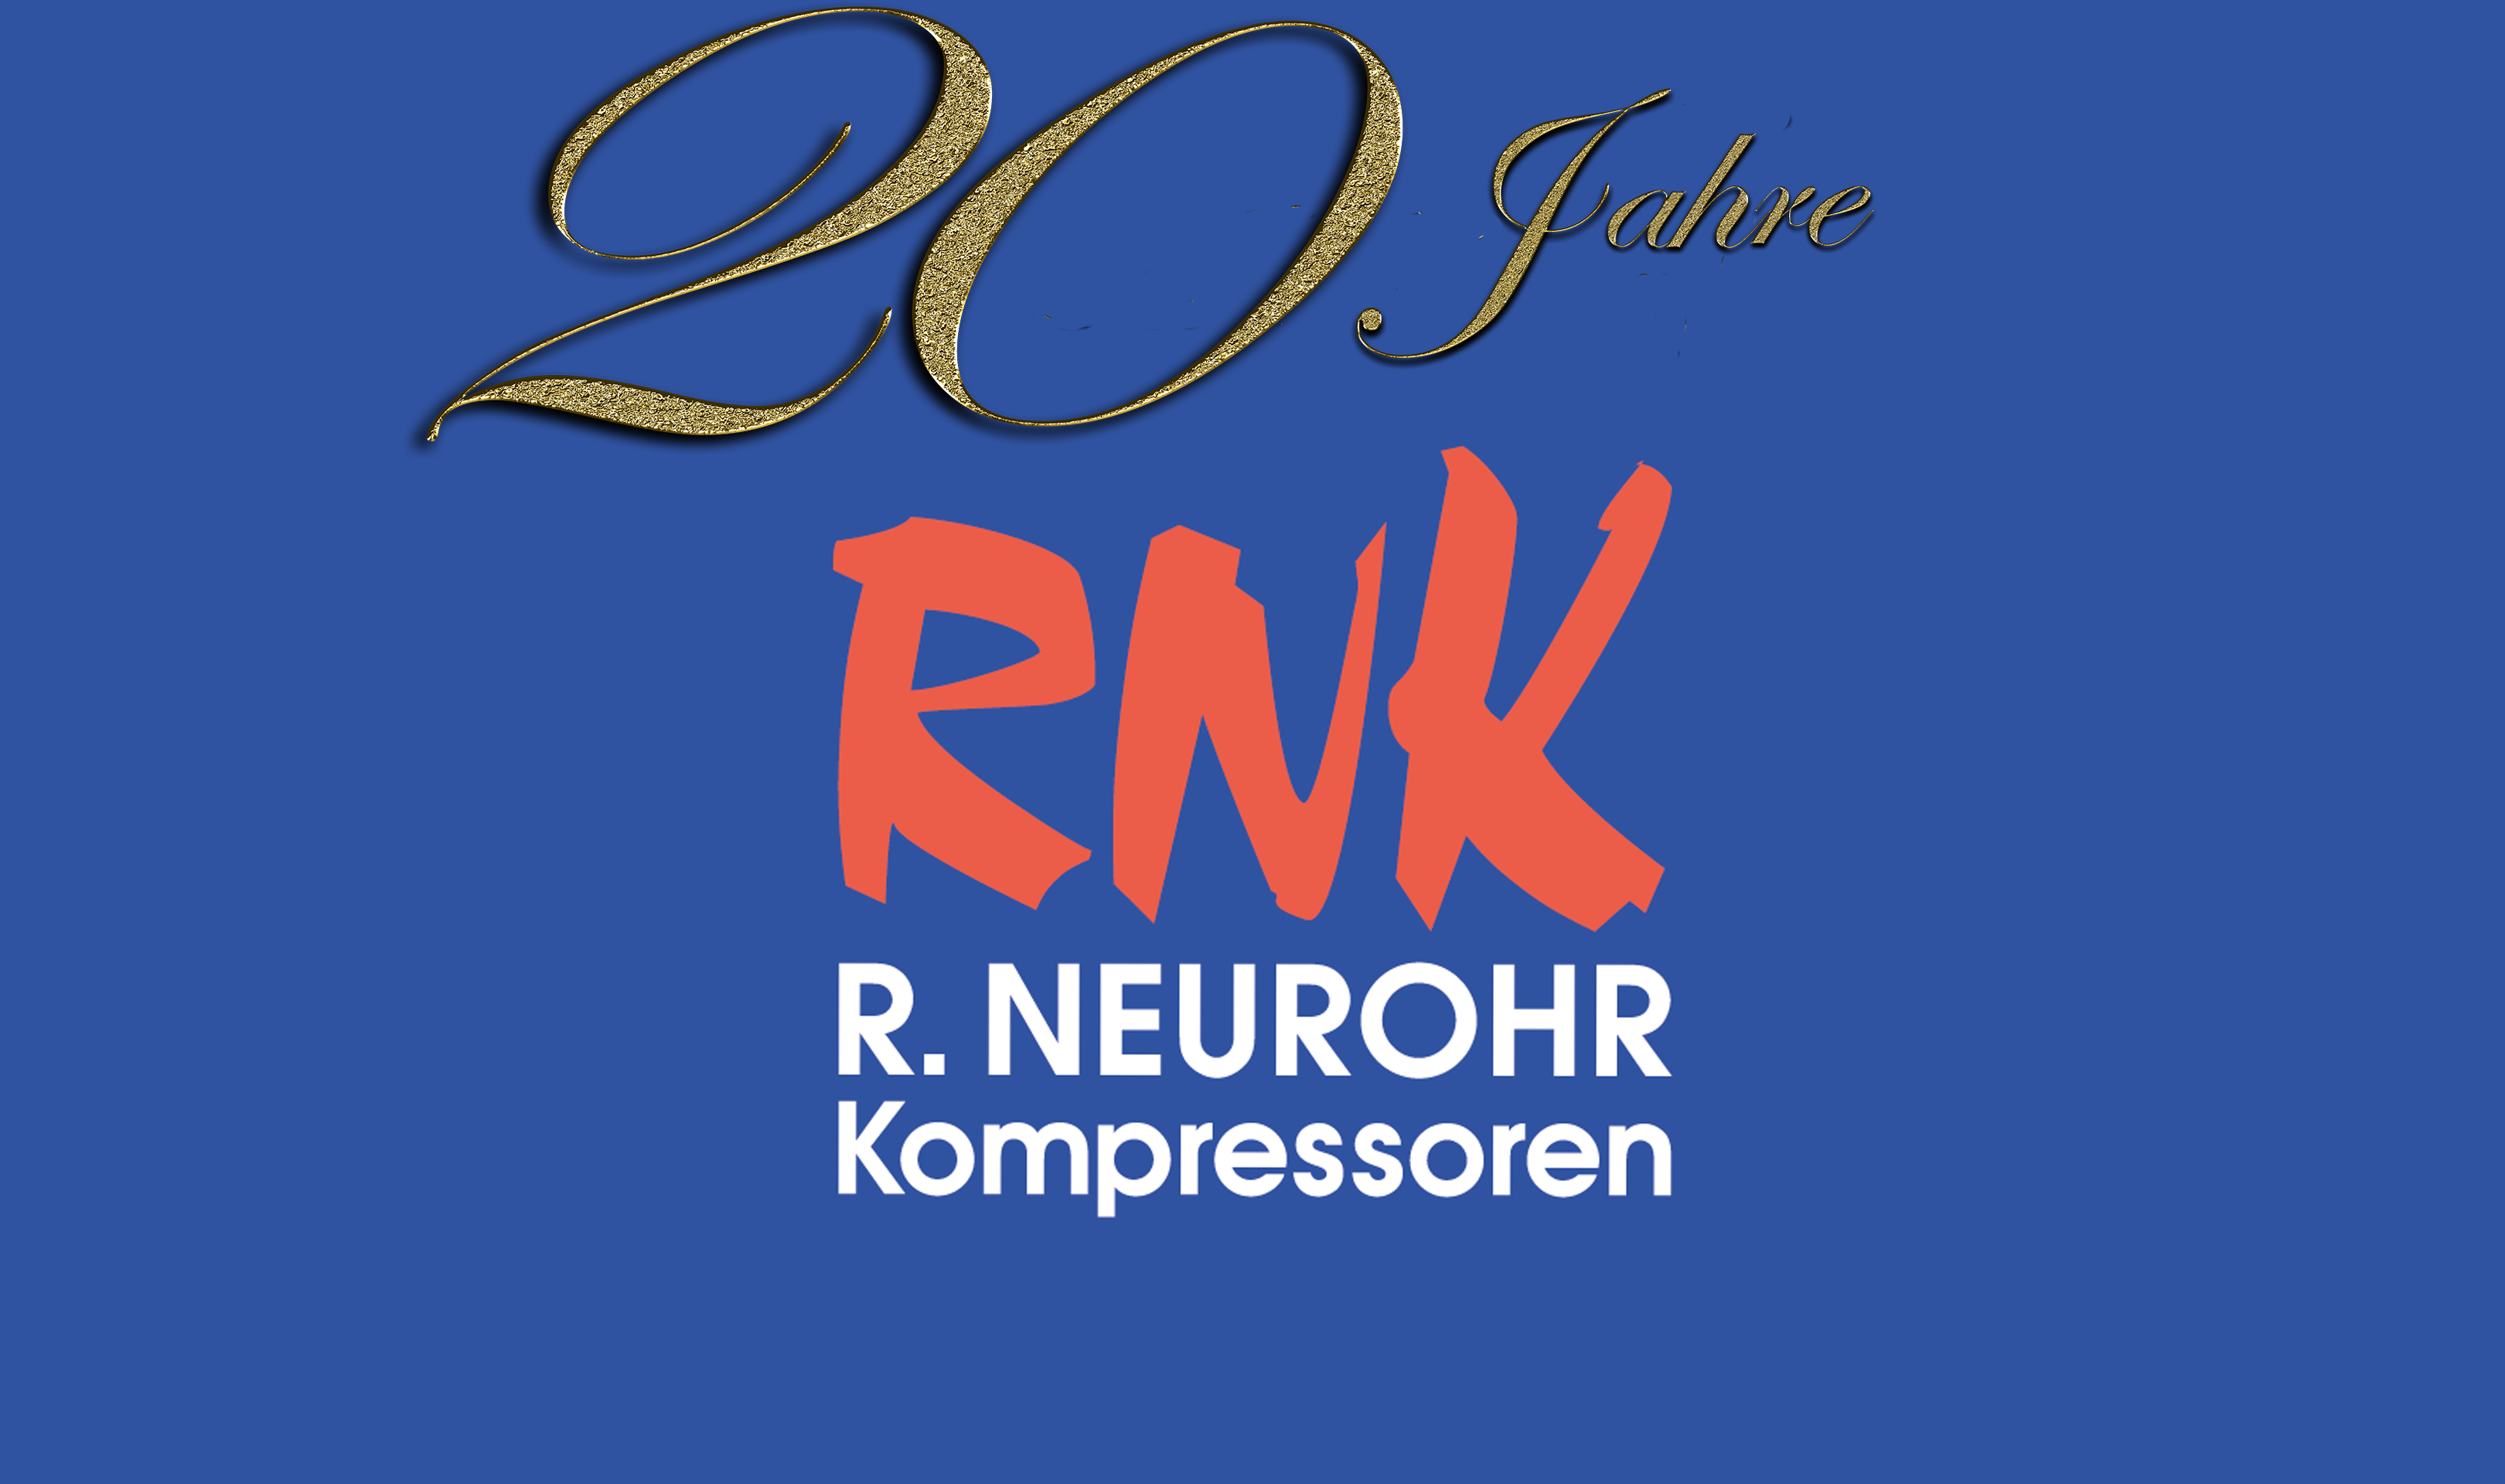 Roland Neurohr Kompressoren